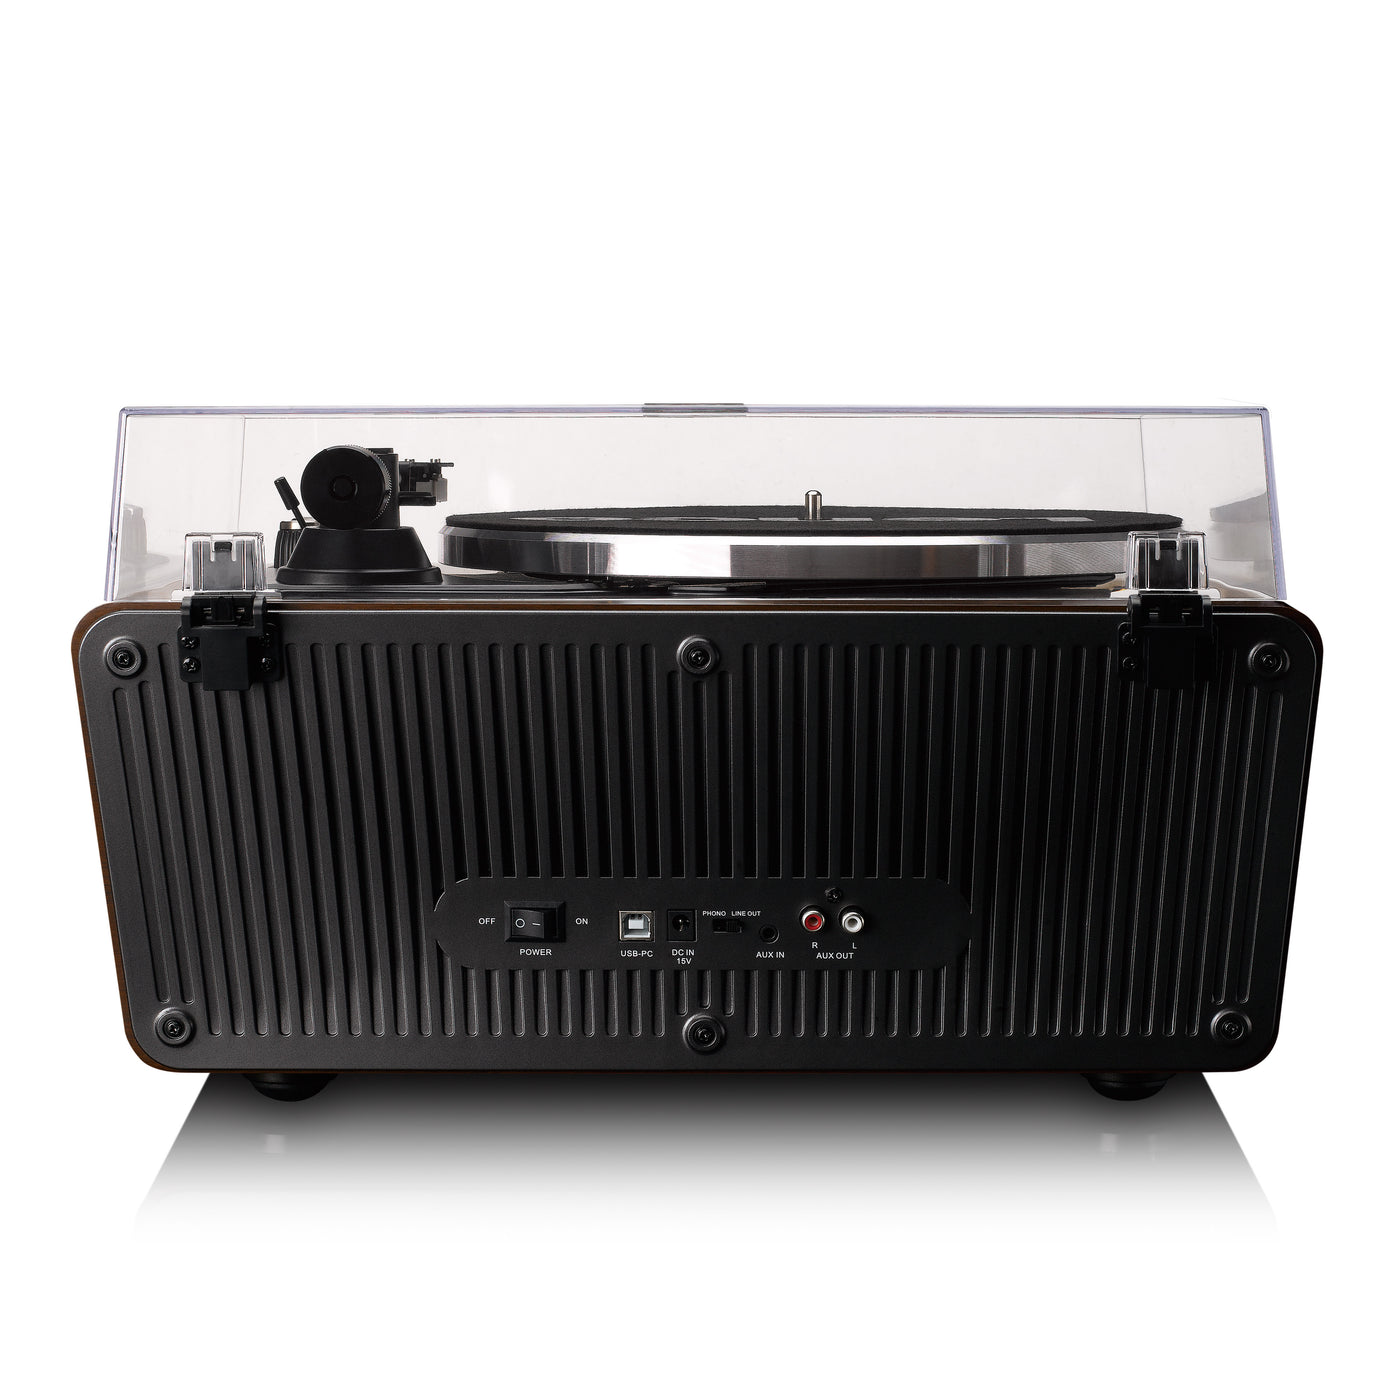 LENCO LS-470WA - Platenspeler met ingebouwde speakers en Bluetooth® - Walnoot